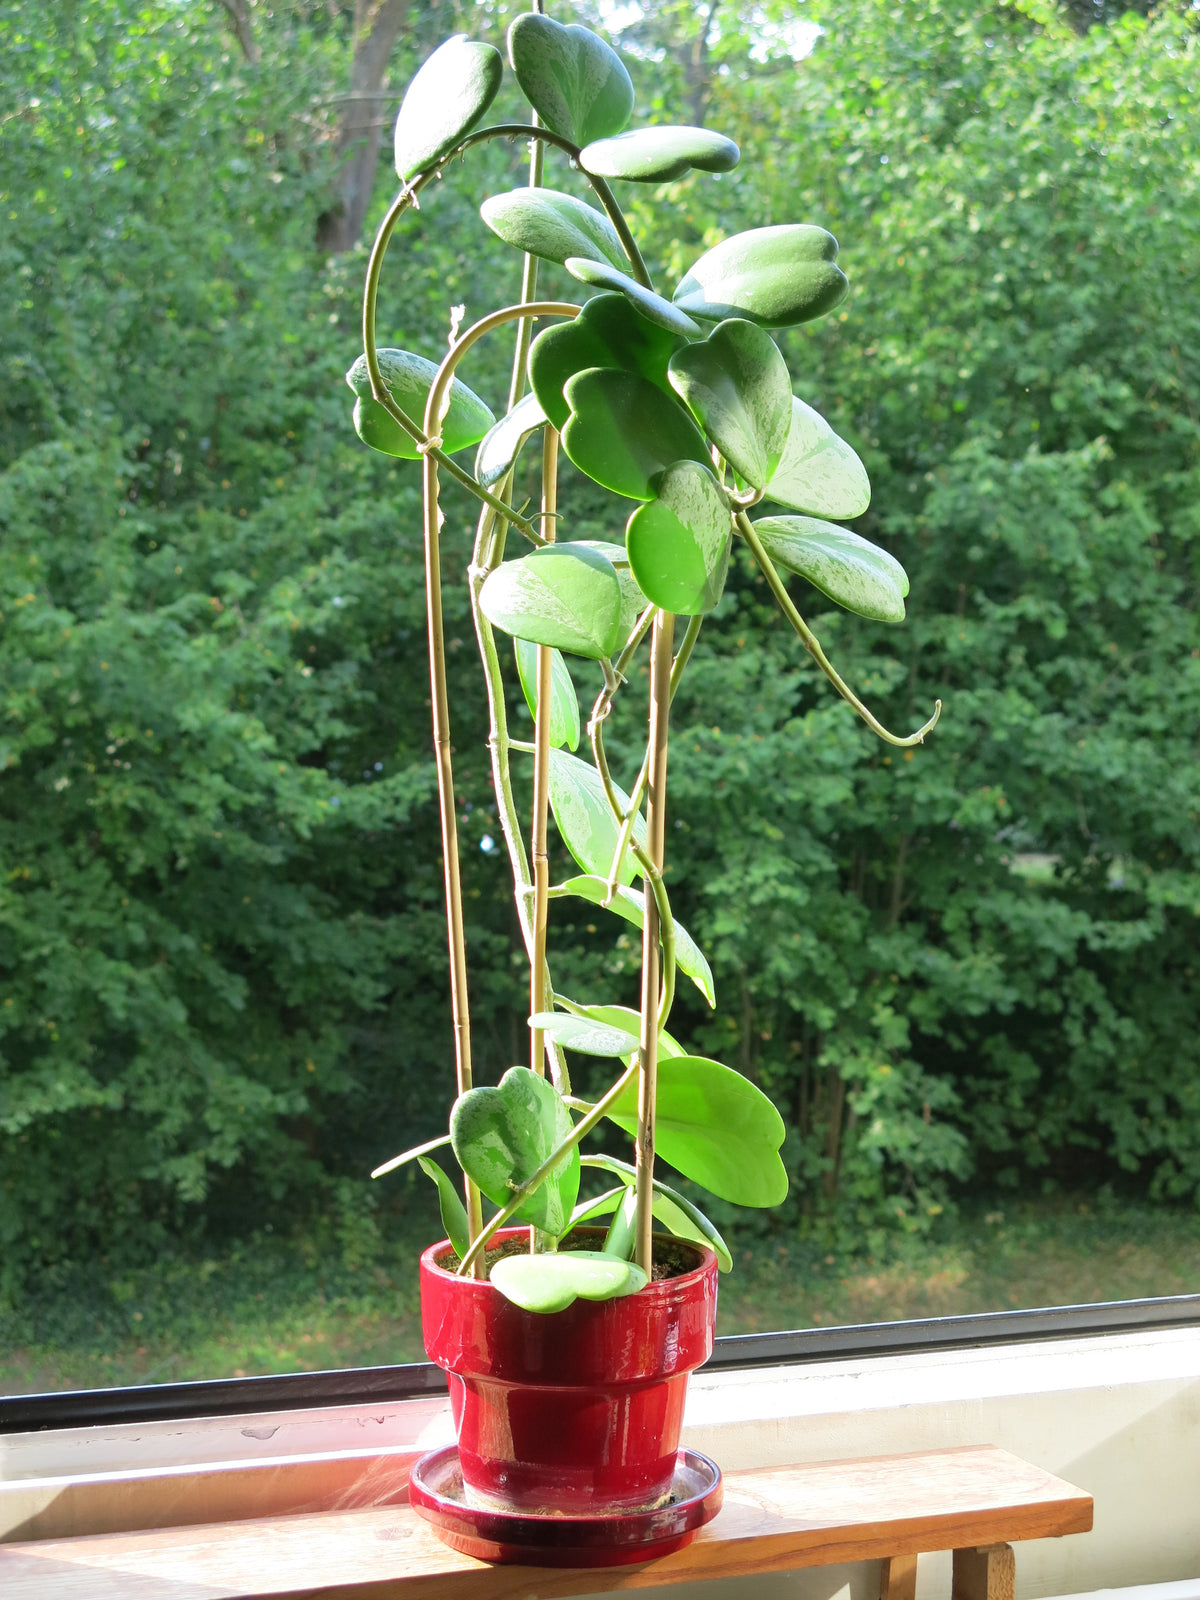 Herzblatt-Pflanze in ihrer kletternden Form in einem roten Topf am Fenster